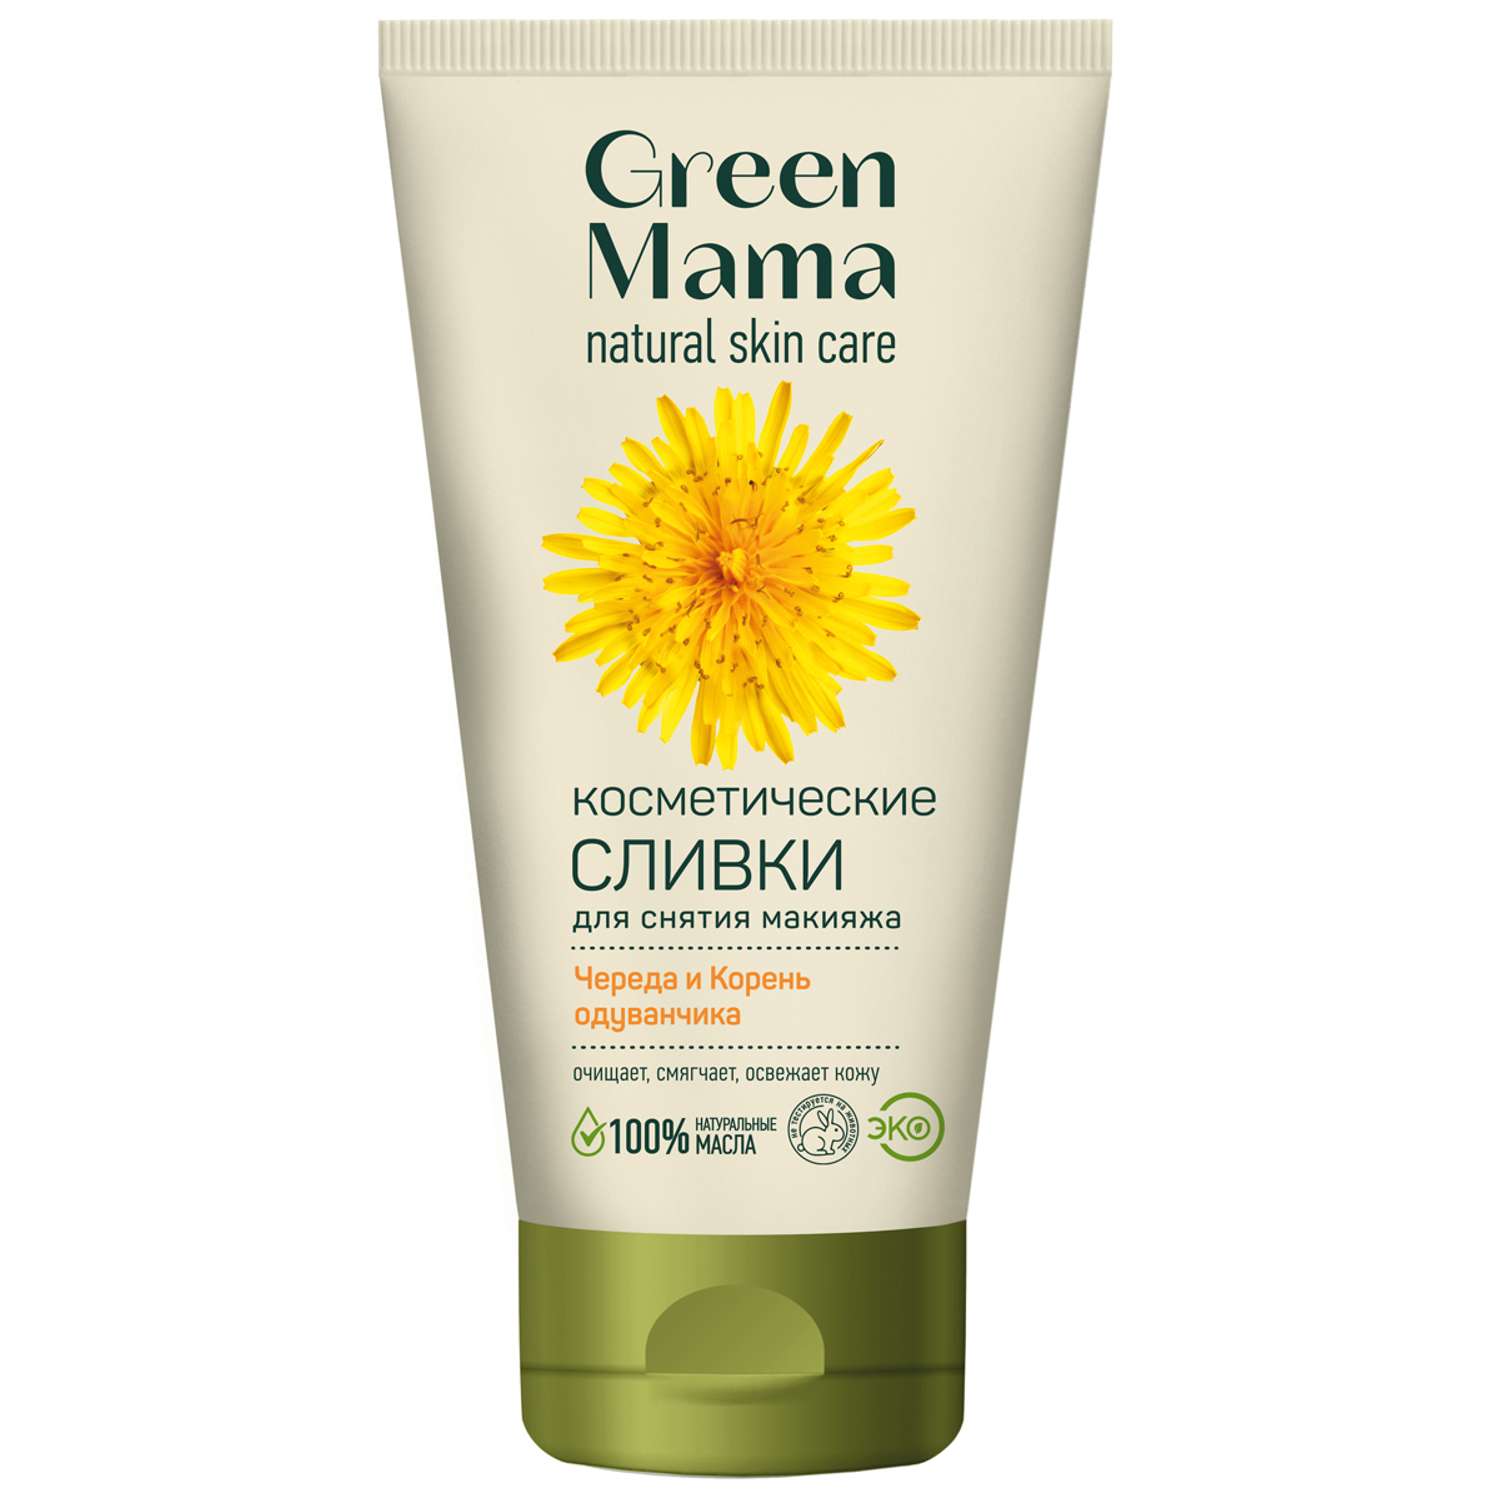 Сливки Green Mama для снятия макияжа череда и корень одуванчика косметические 170 мл - фото 1